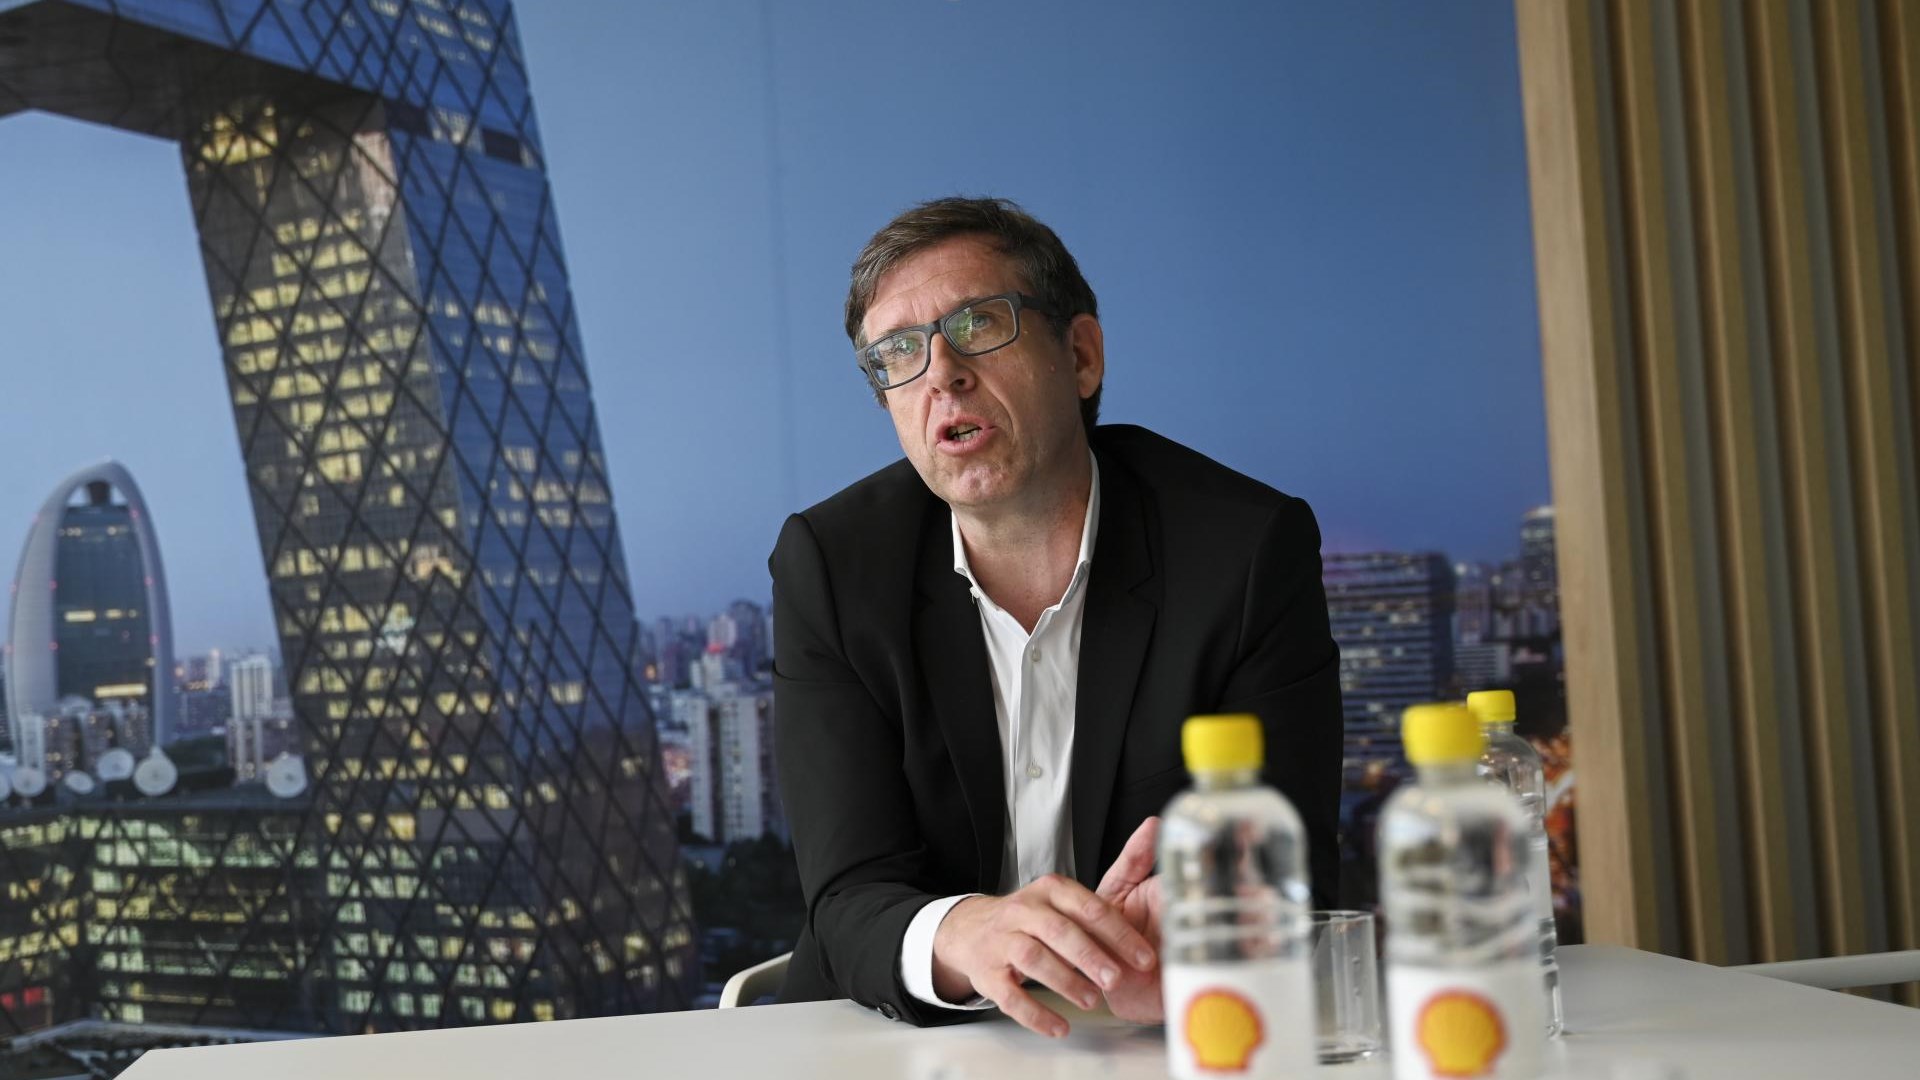 #intervju Gregor Omejc, direktor podjetja Shell Adria: Zastavljeni načrti niso velikopotezni